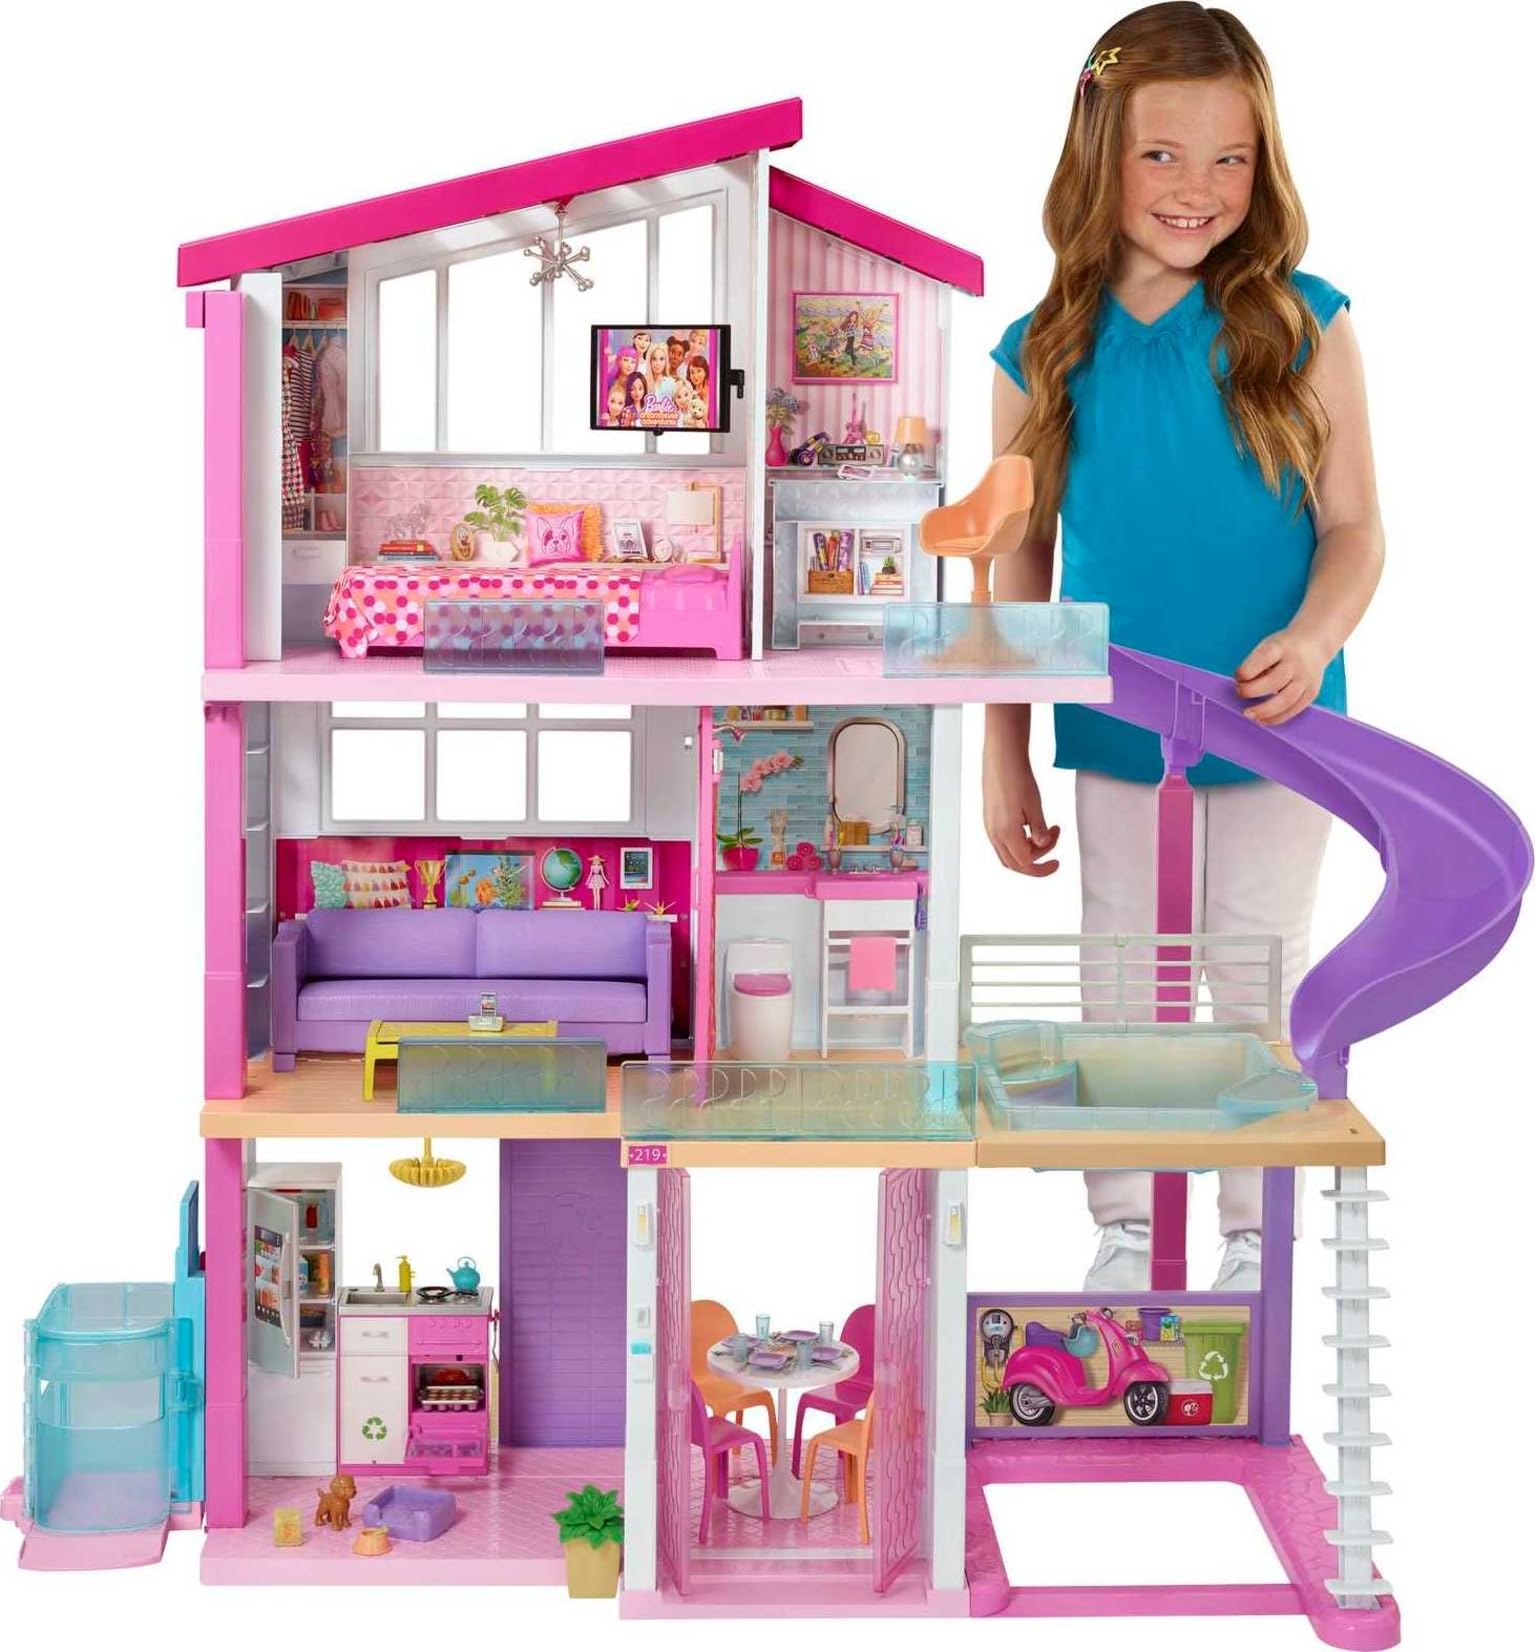 Barbie بيت الدمى DreamHouse مع أكثر من 70 ملحقًا ومصعد عمل ومنزلق وأثاث متحول وأضواء وأصوات (حصريًا لأمازون)